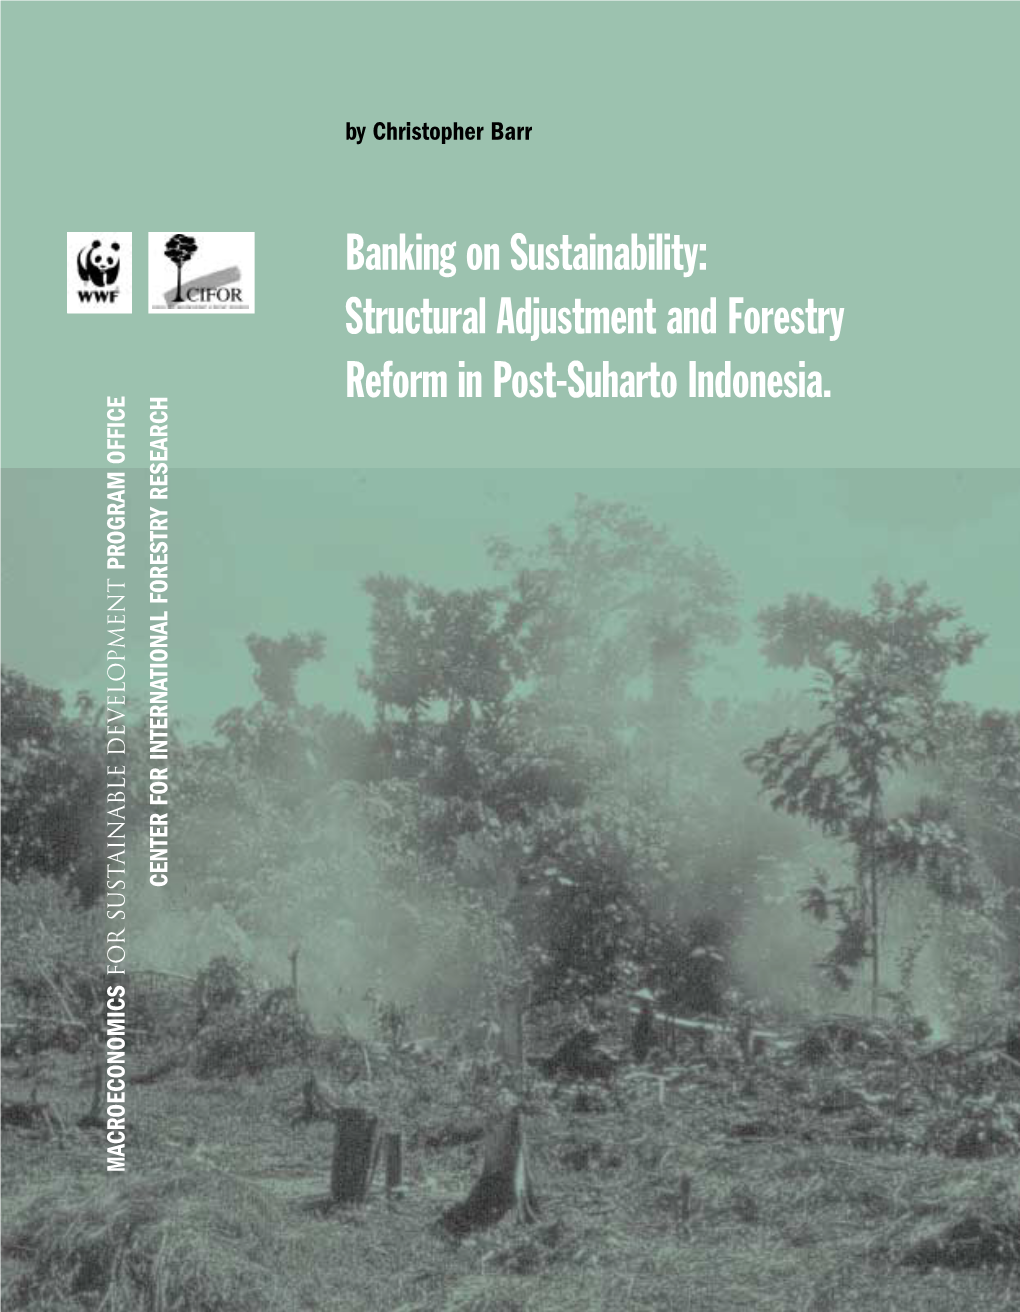 Banking on Sustainability